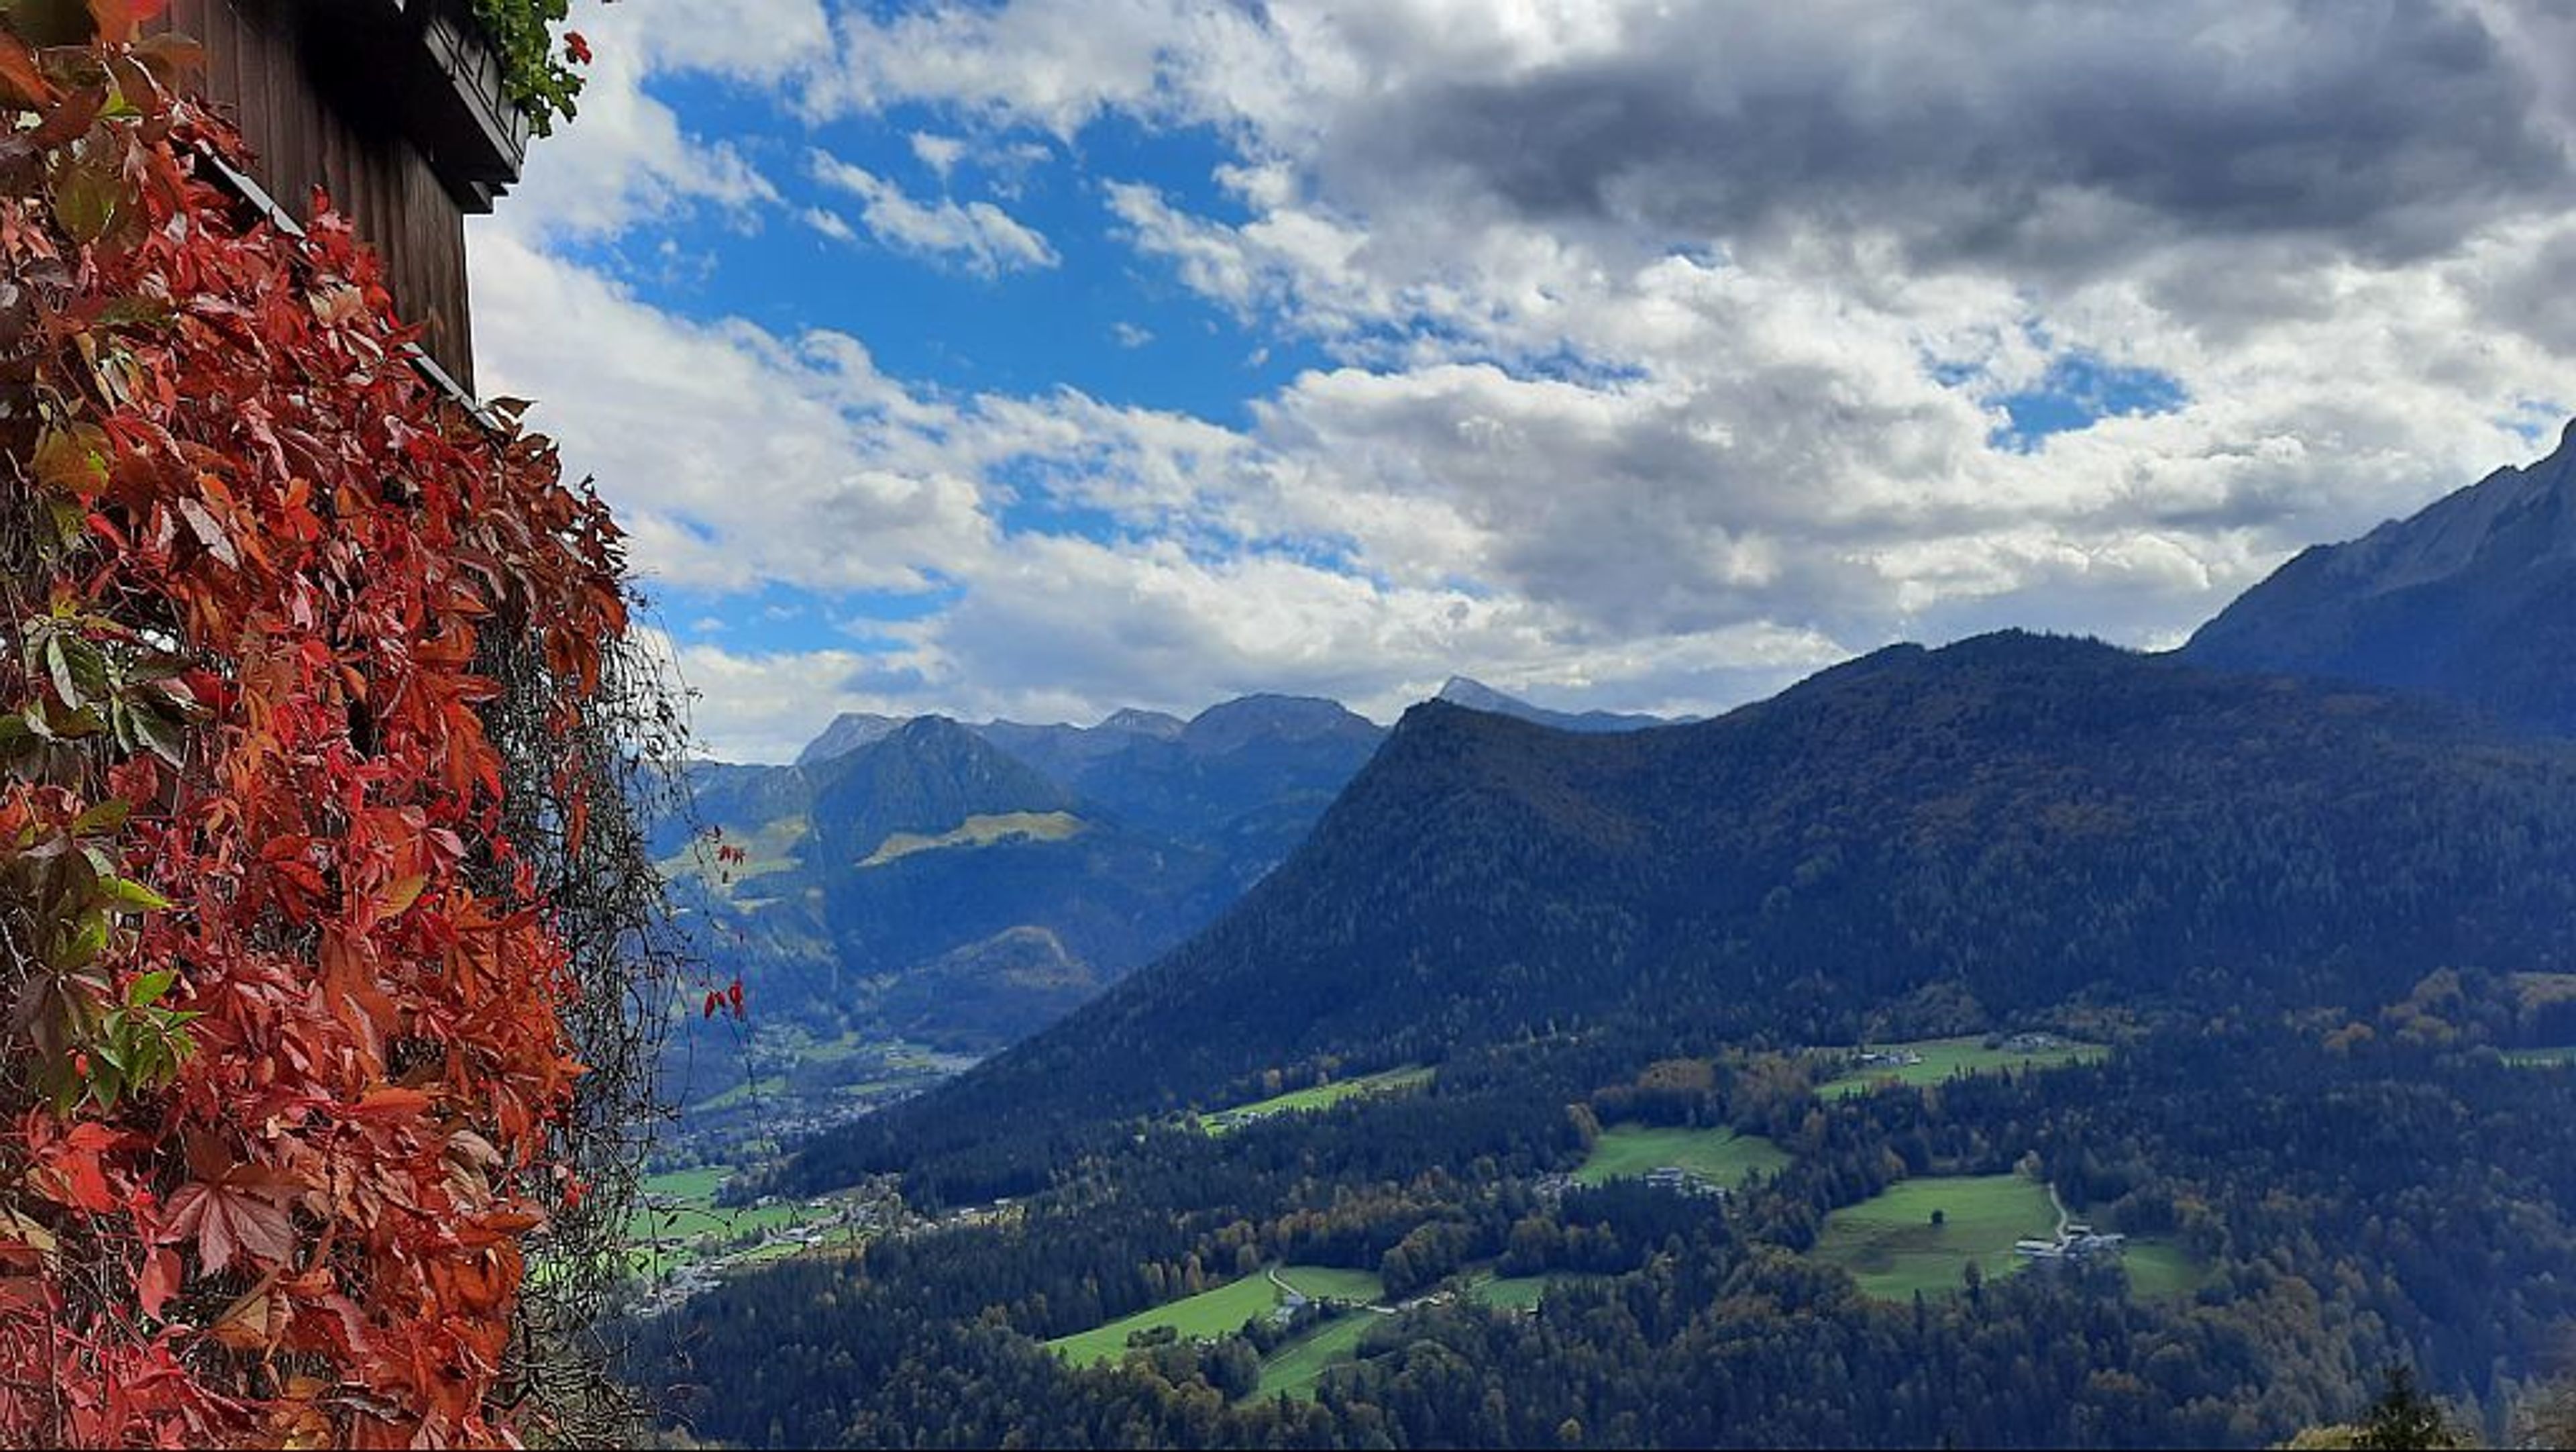 Hiking in Berchtesgaden